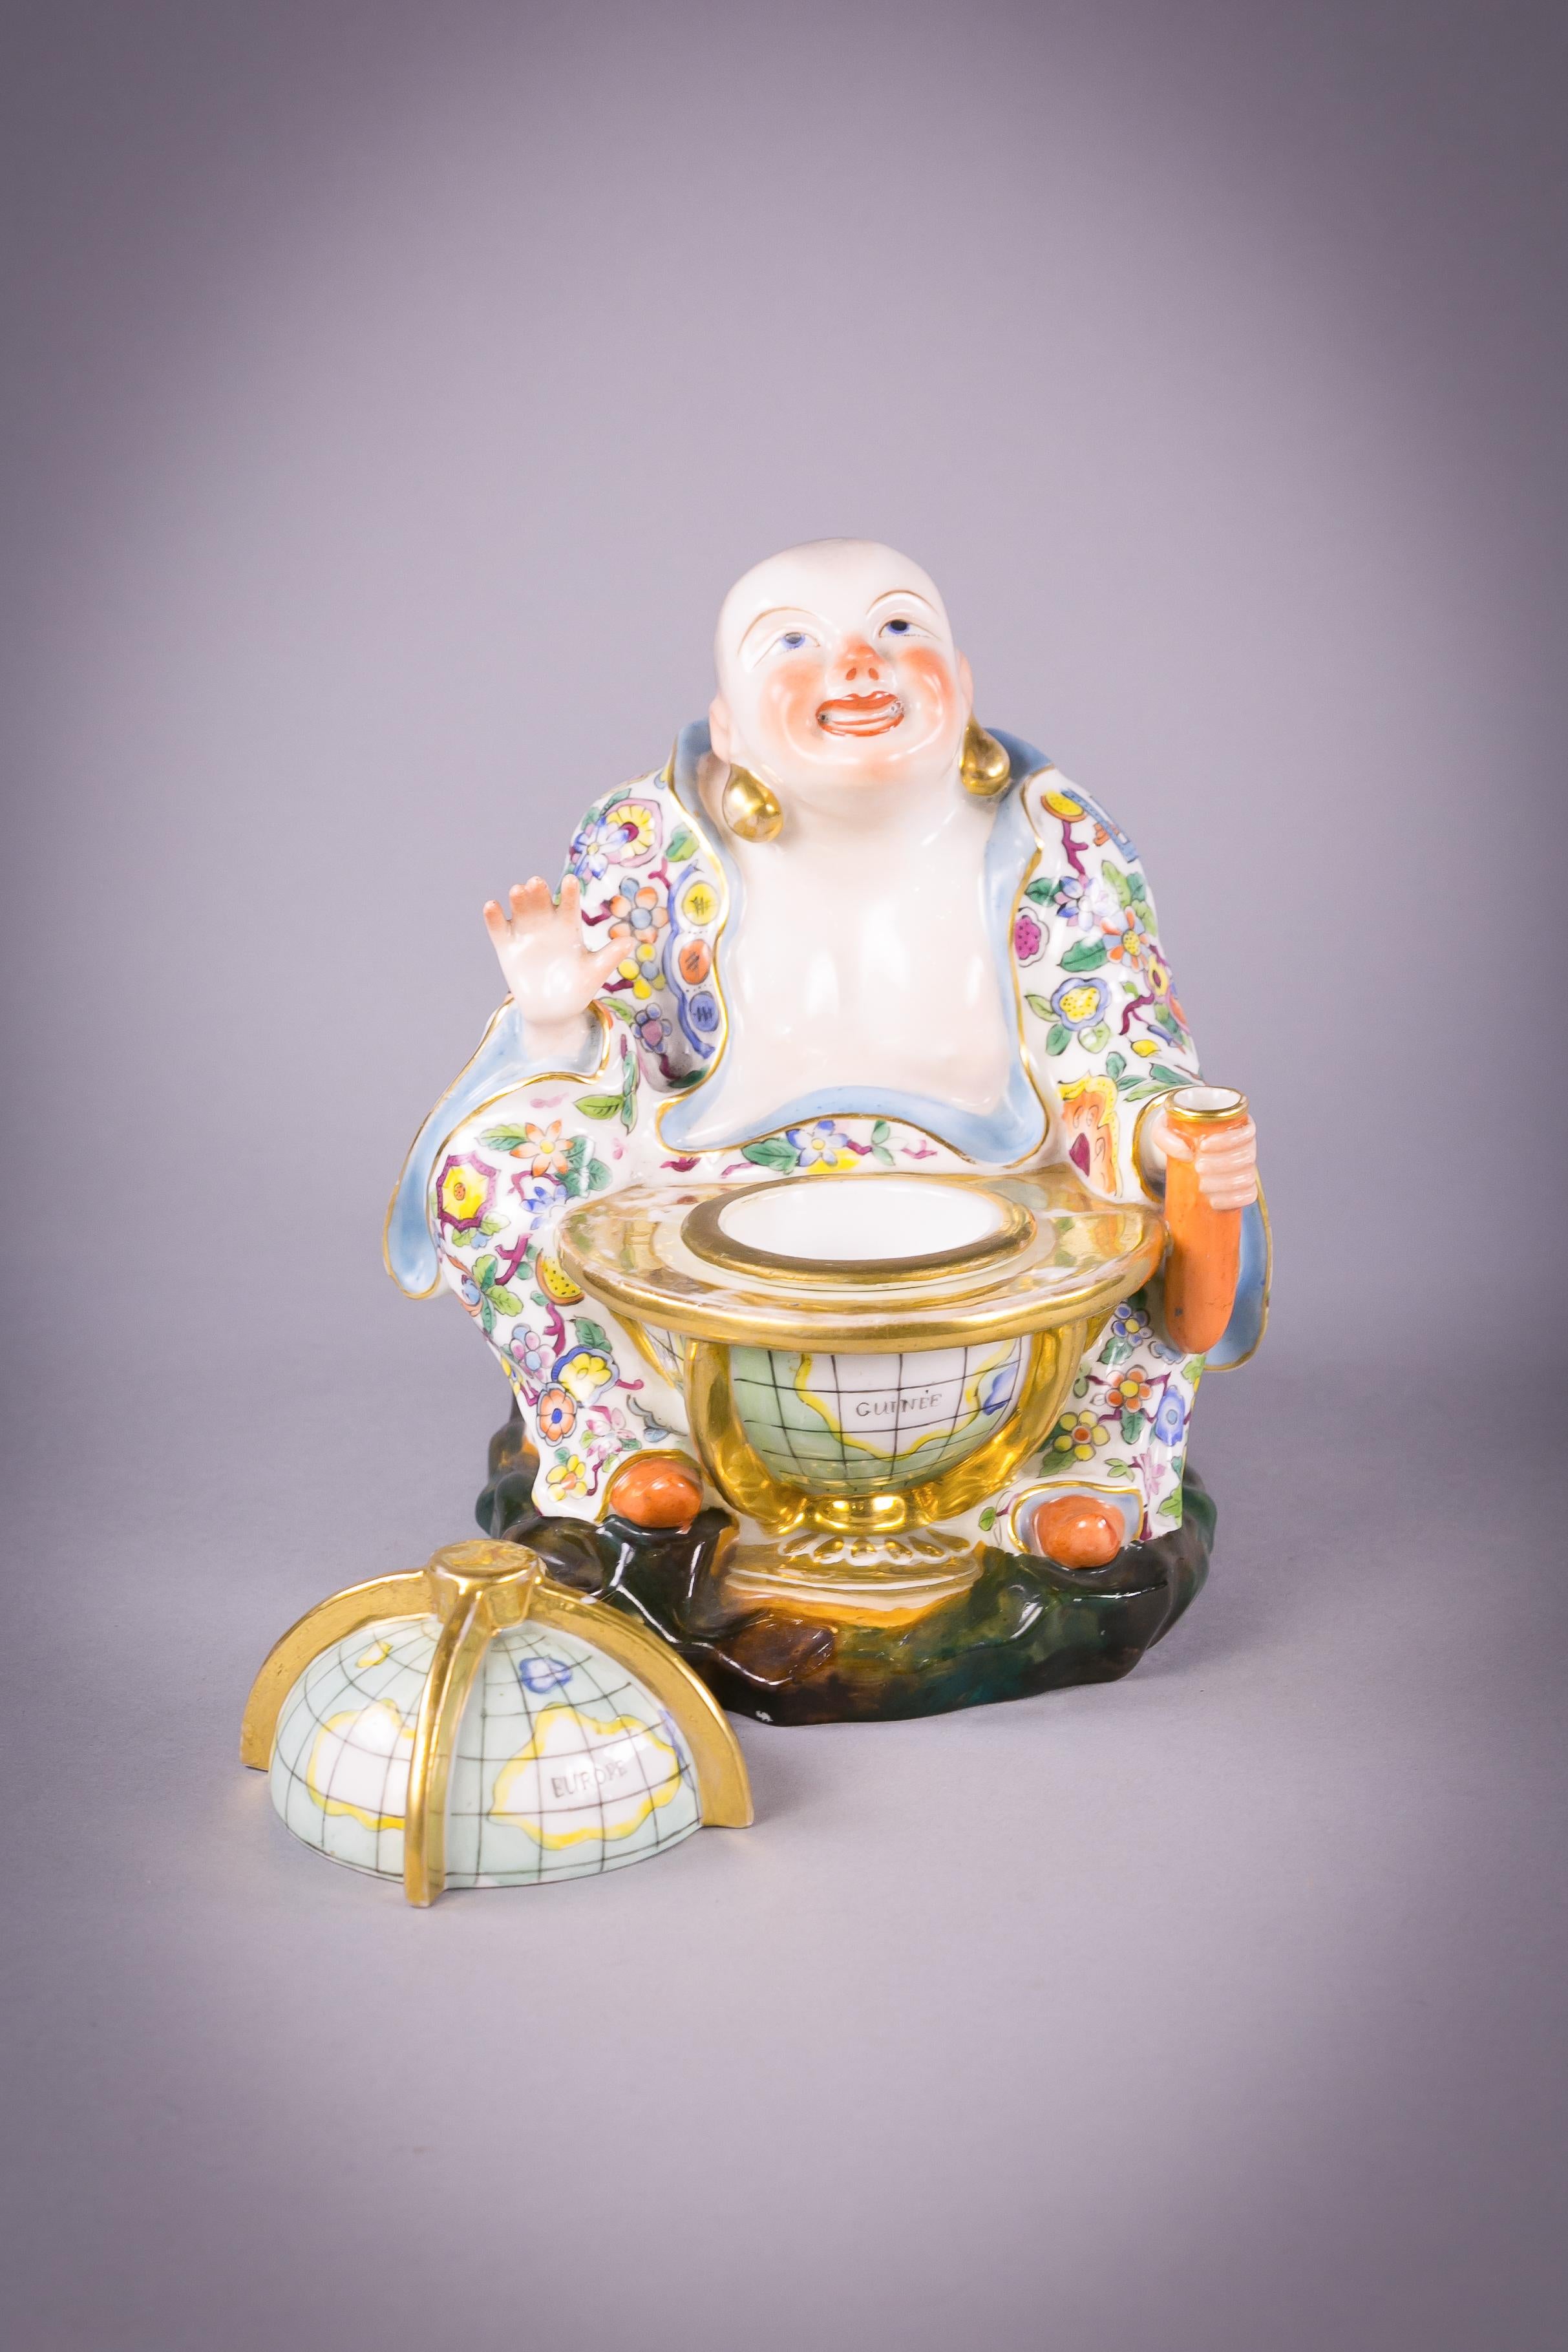 Mit abnehmbarem Globusdeckel, der ein abnehmbares Tintenfass offenbart. Der chinesische Buddha hält in seiner linken Hand einen Federkielhalter.